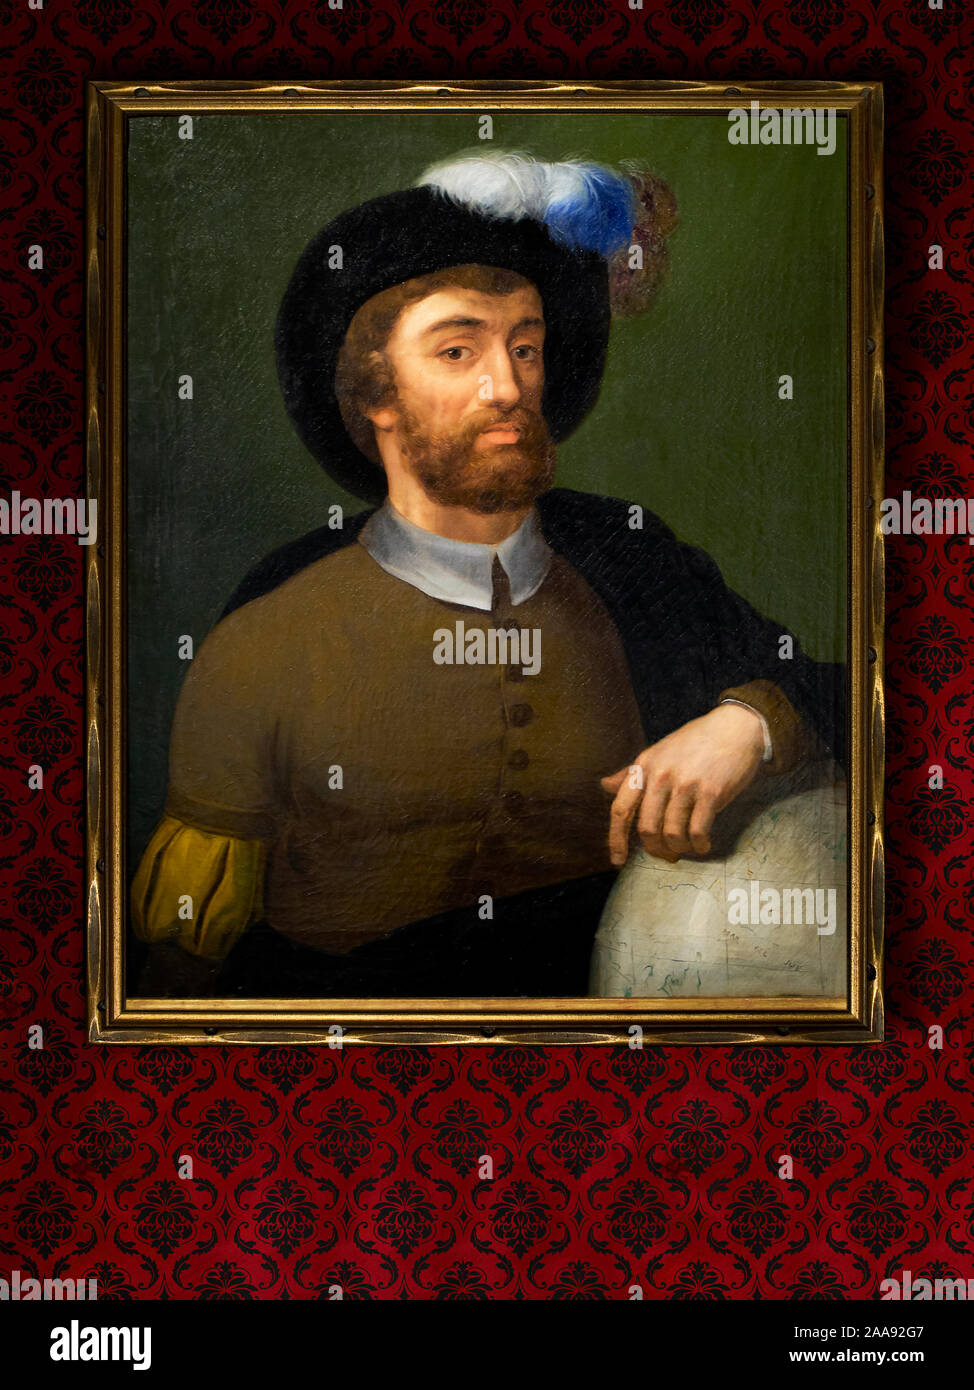 Juan Sebastian Elcano portrait. L'explorateur espagnol qui a terminé pour la première fois le tour de la Terre. Anonyme, xixème siècle. Banque D'Images